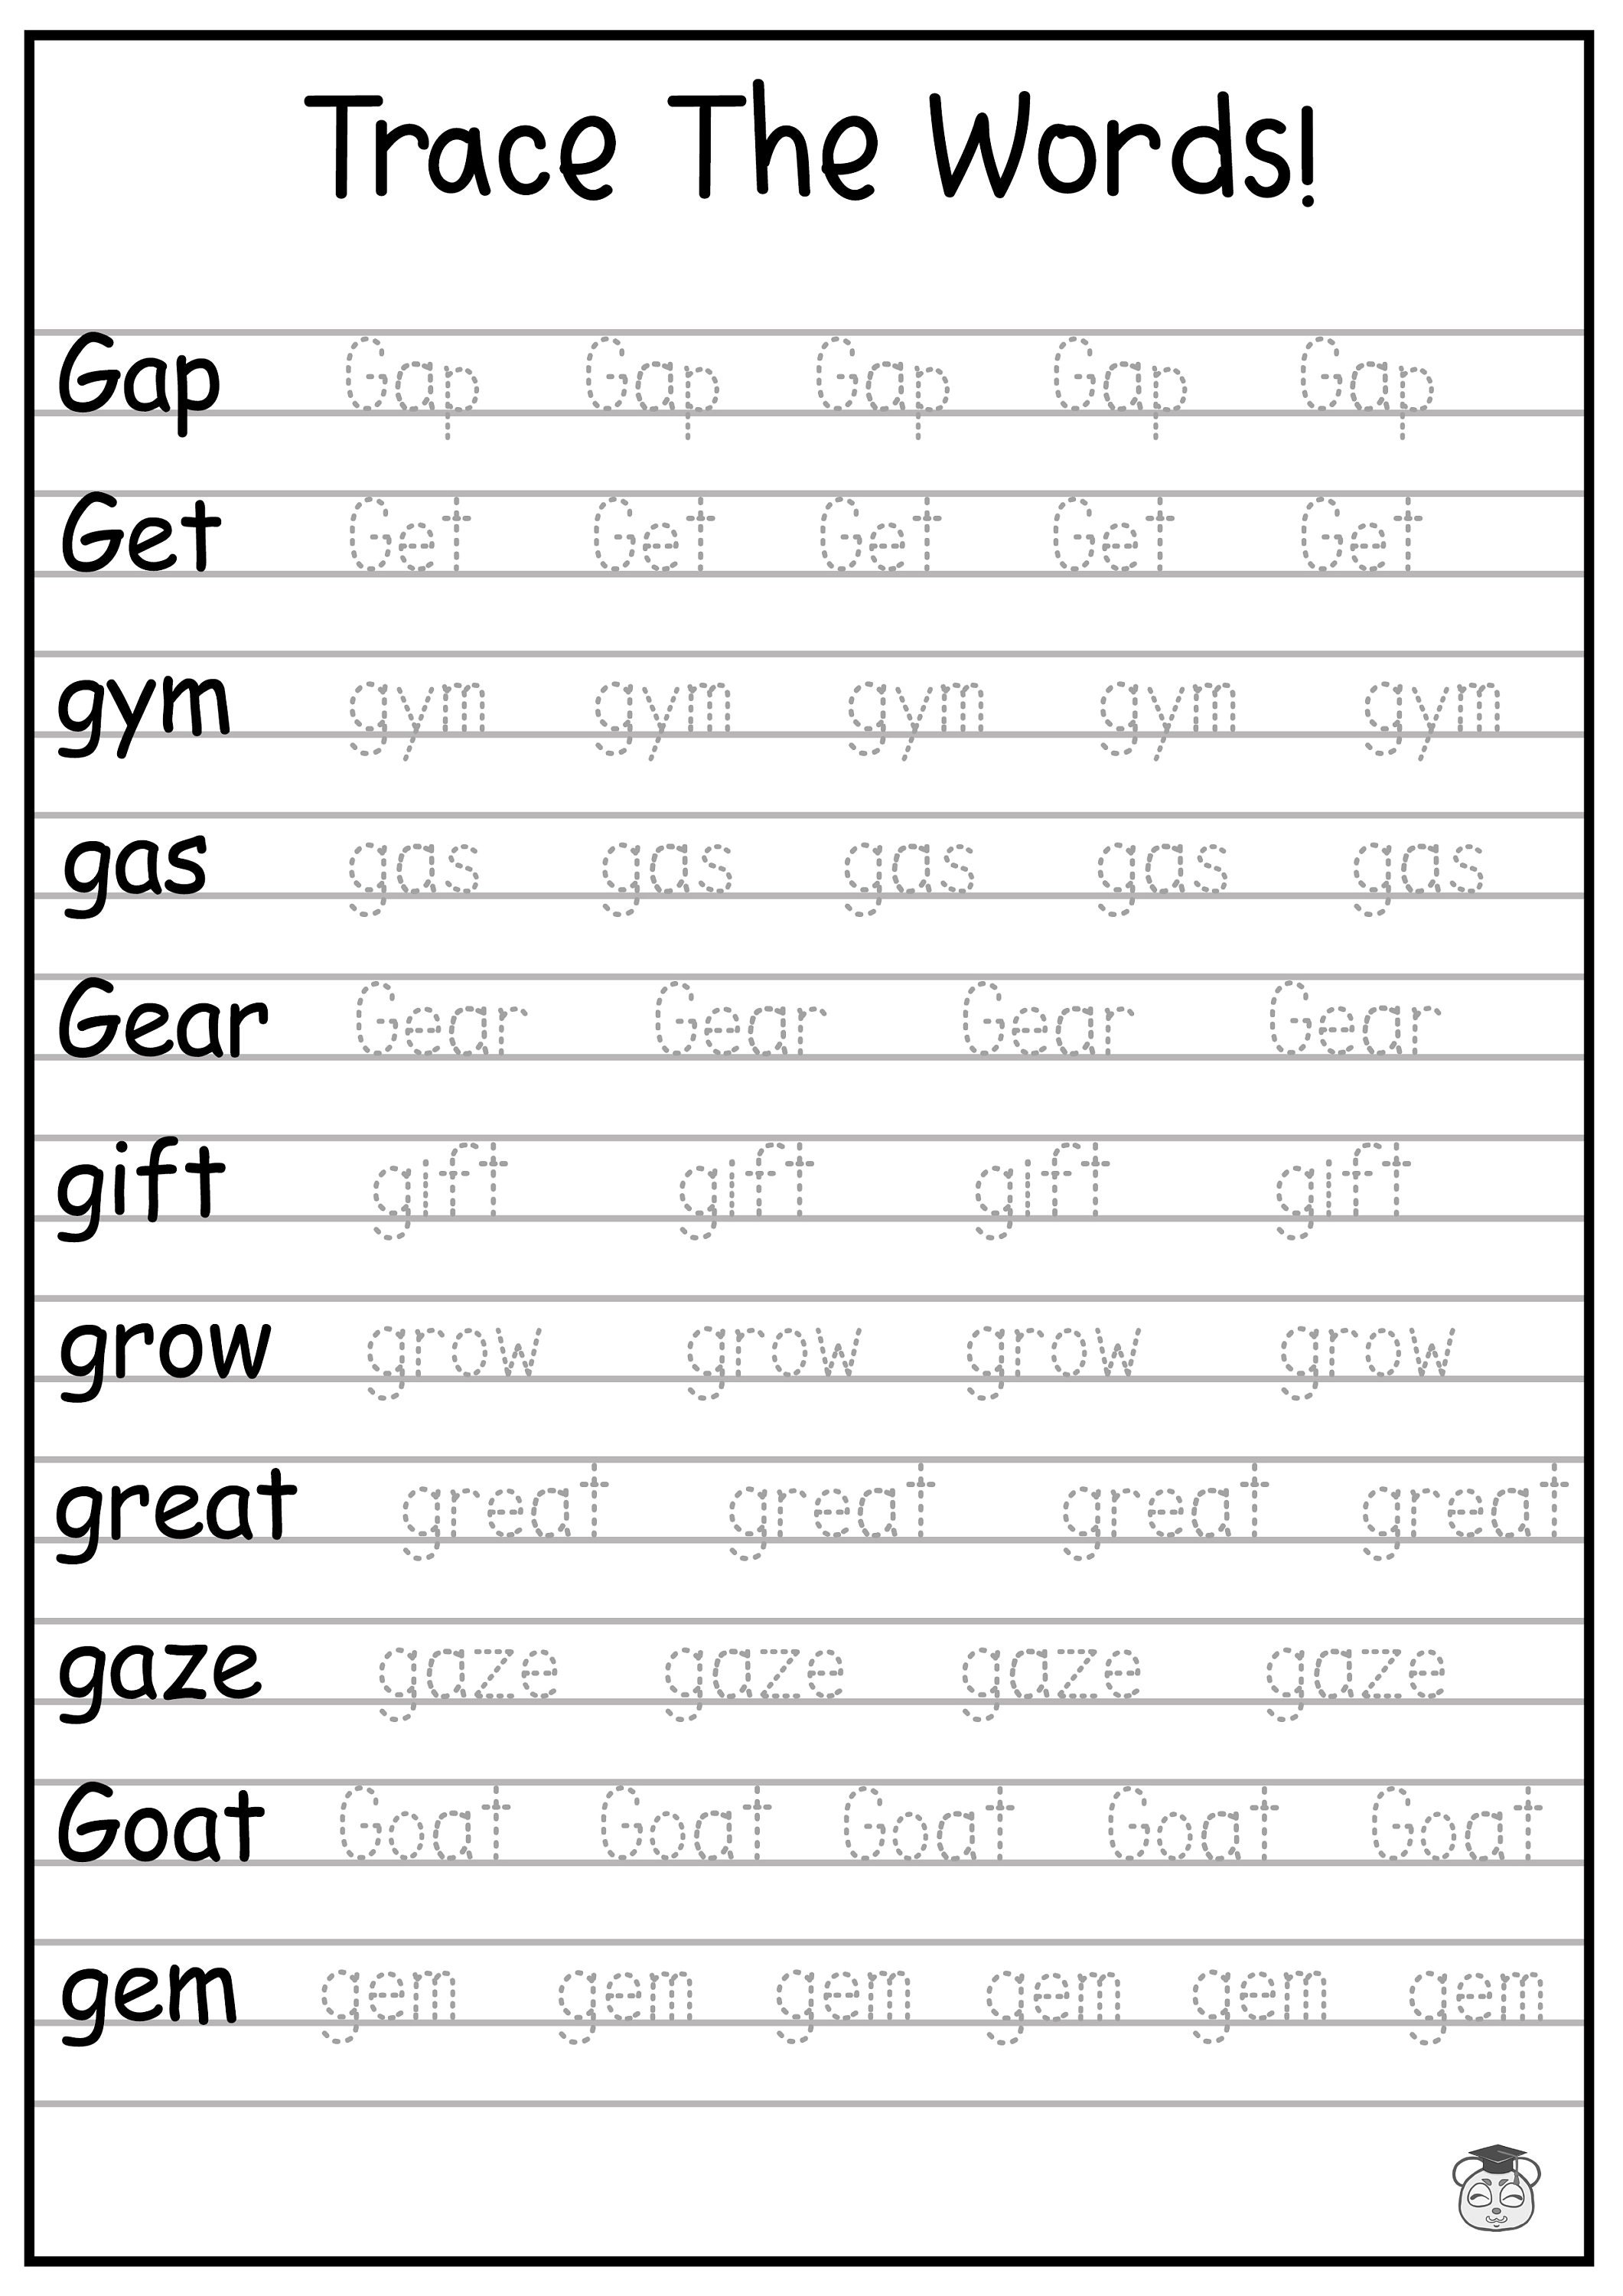 The Big Glossary of Gym Slang